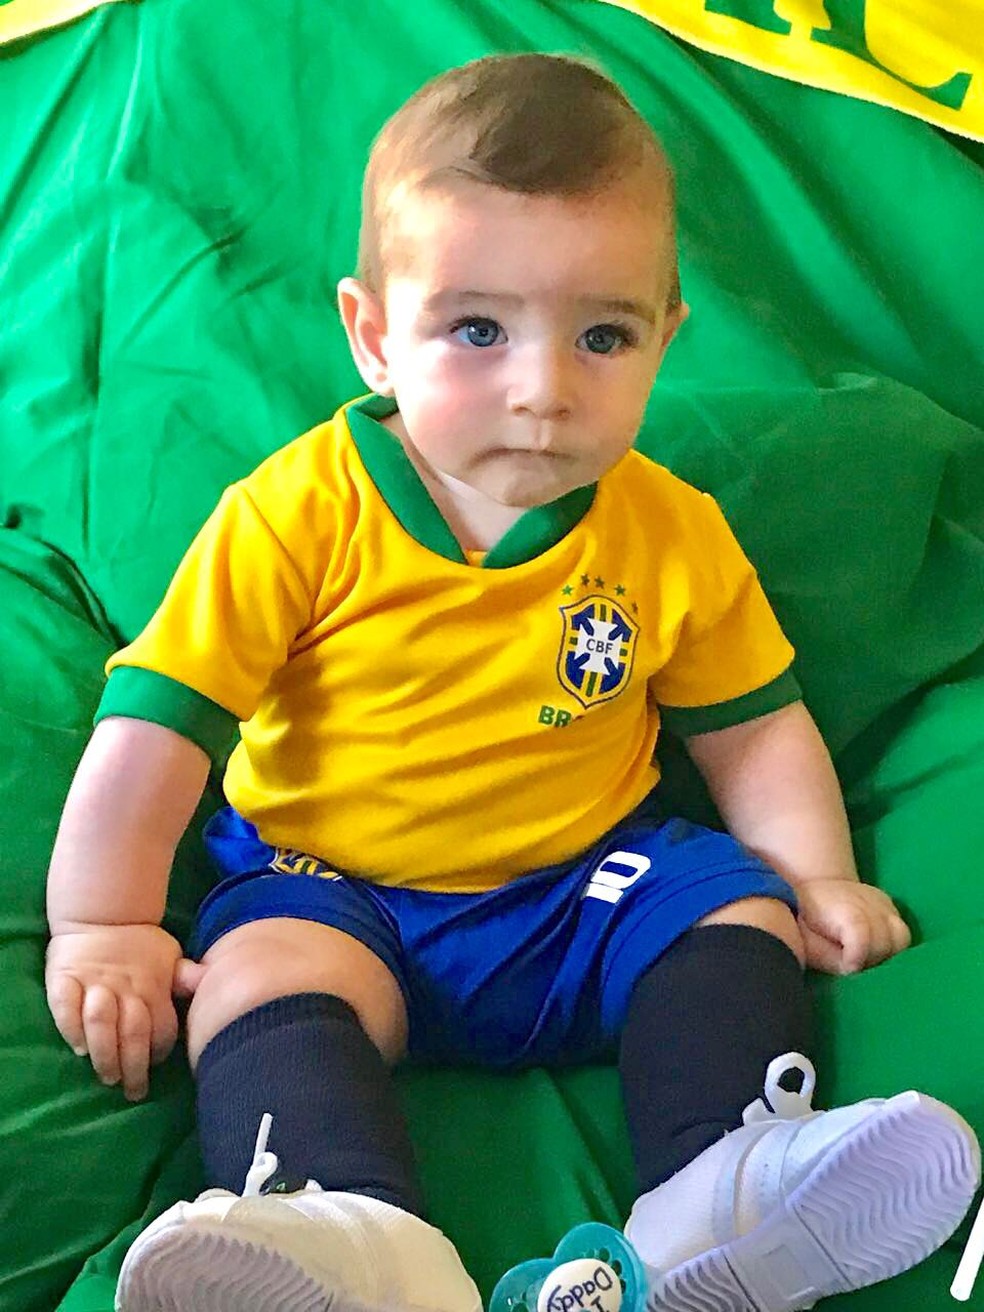 Brasiliense se torna a 1ª pessoa a assistir a todos os jogos da Copa